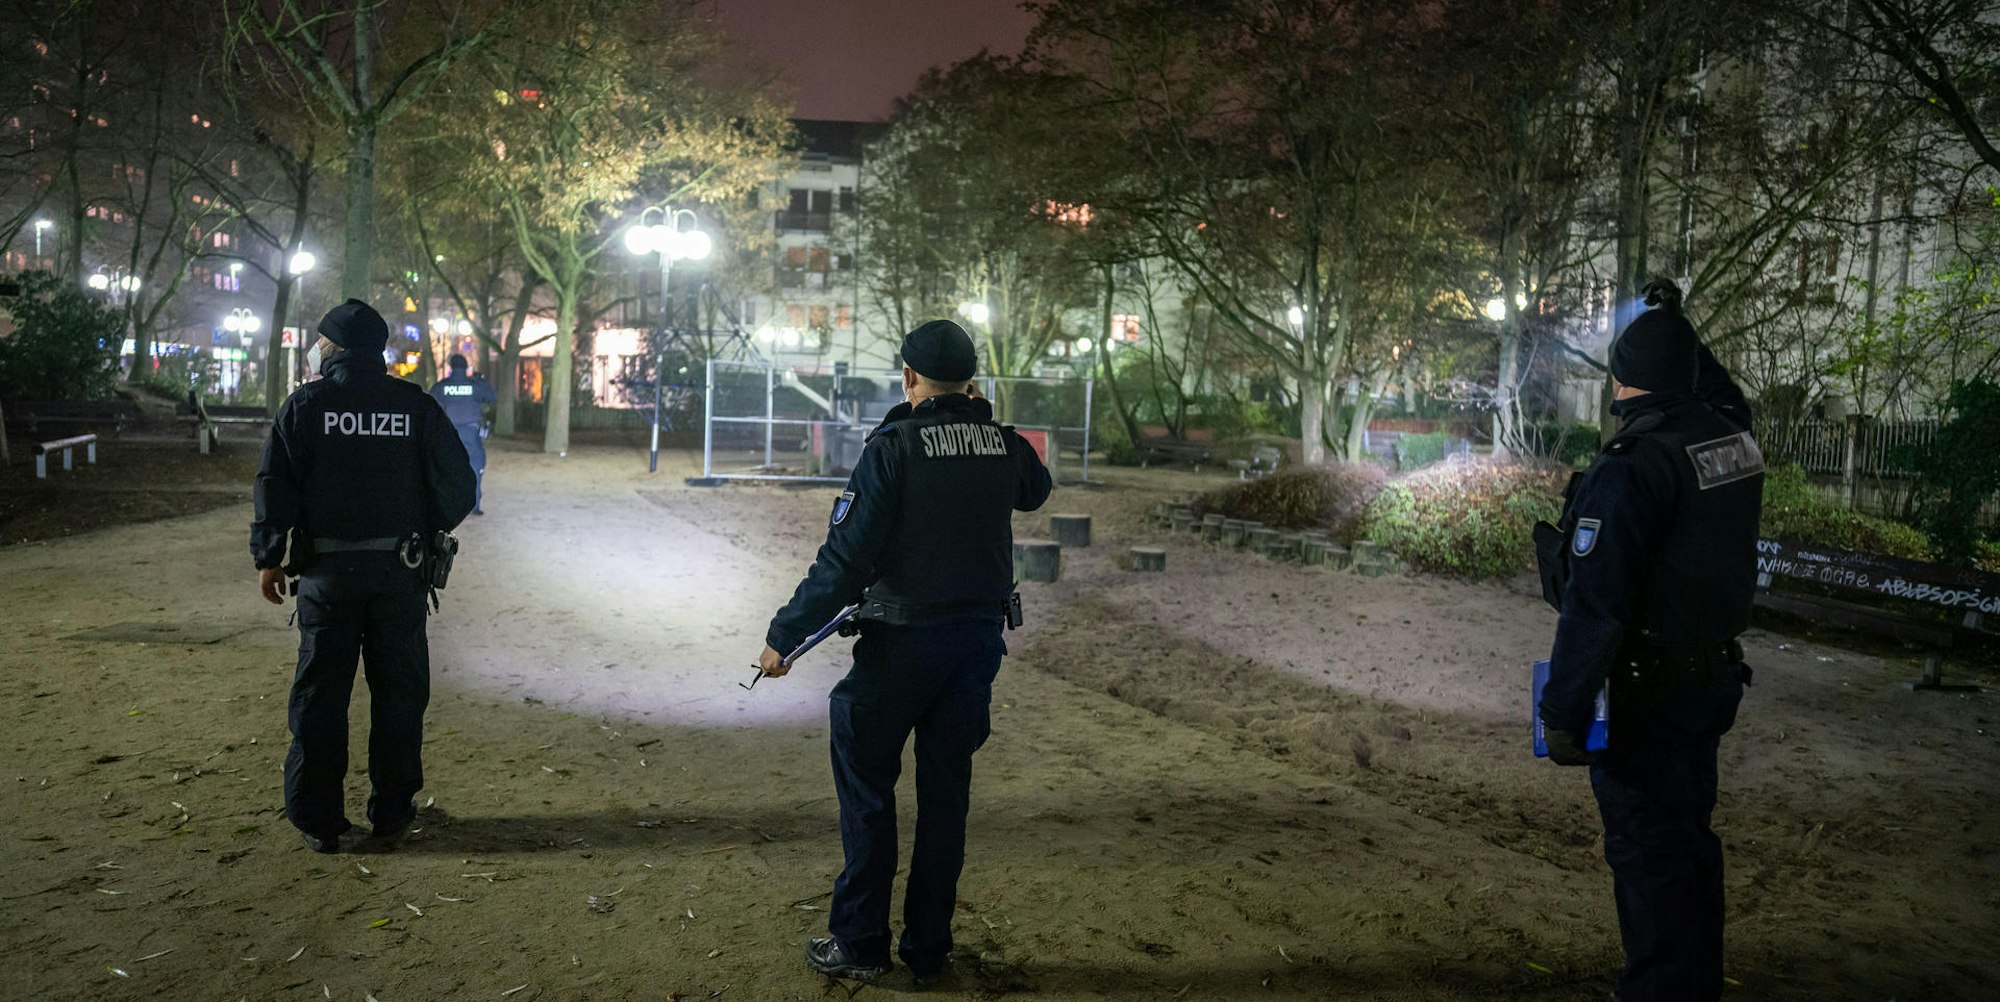 Polizei Spielplatz Taschenlampen